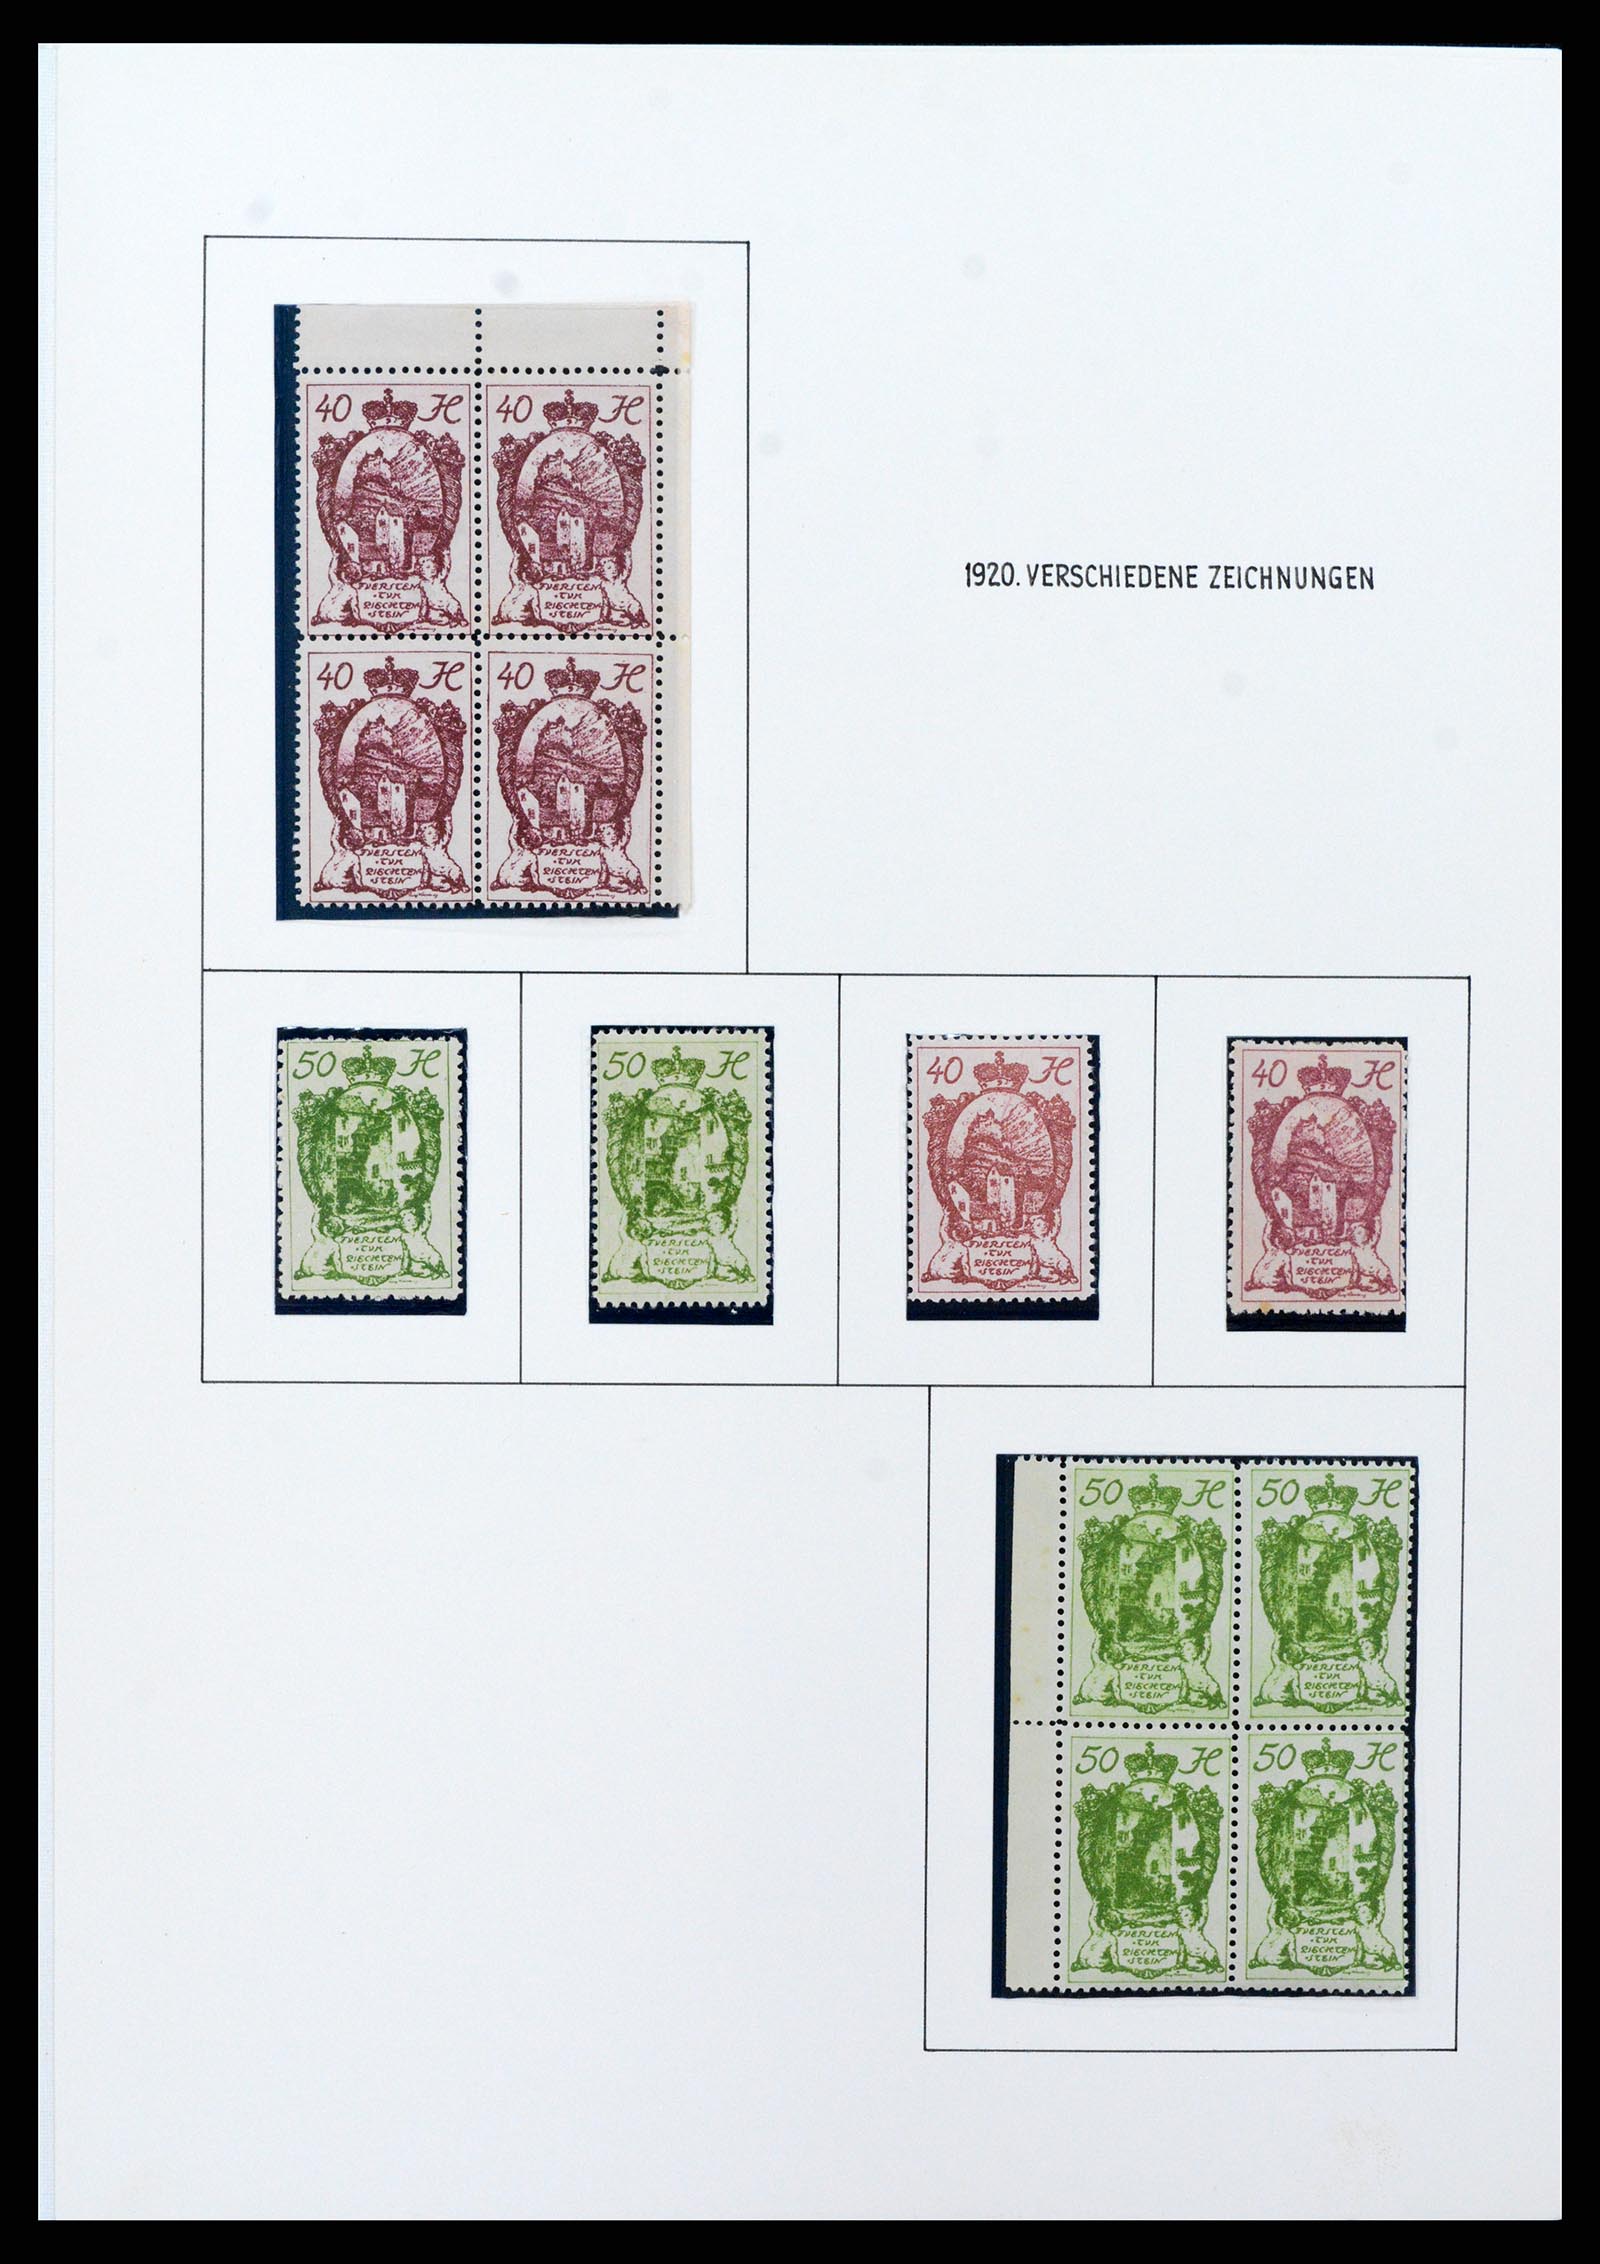 37150 0080 - Stamp collection 37150 Liechtenstein supercollection 1912-1962.